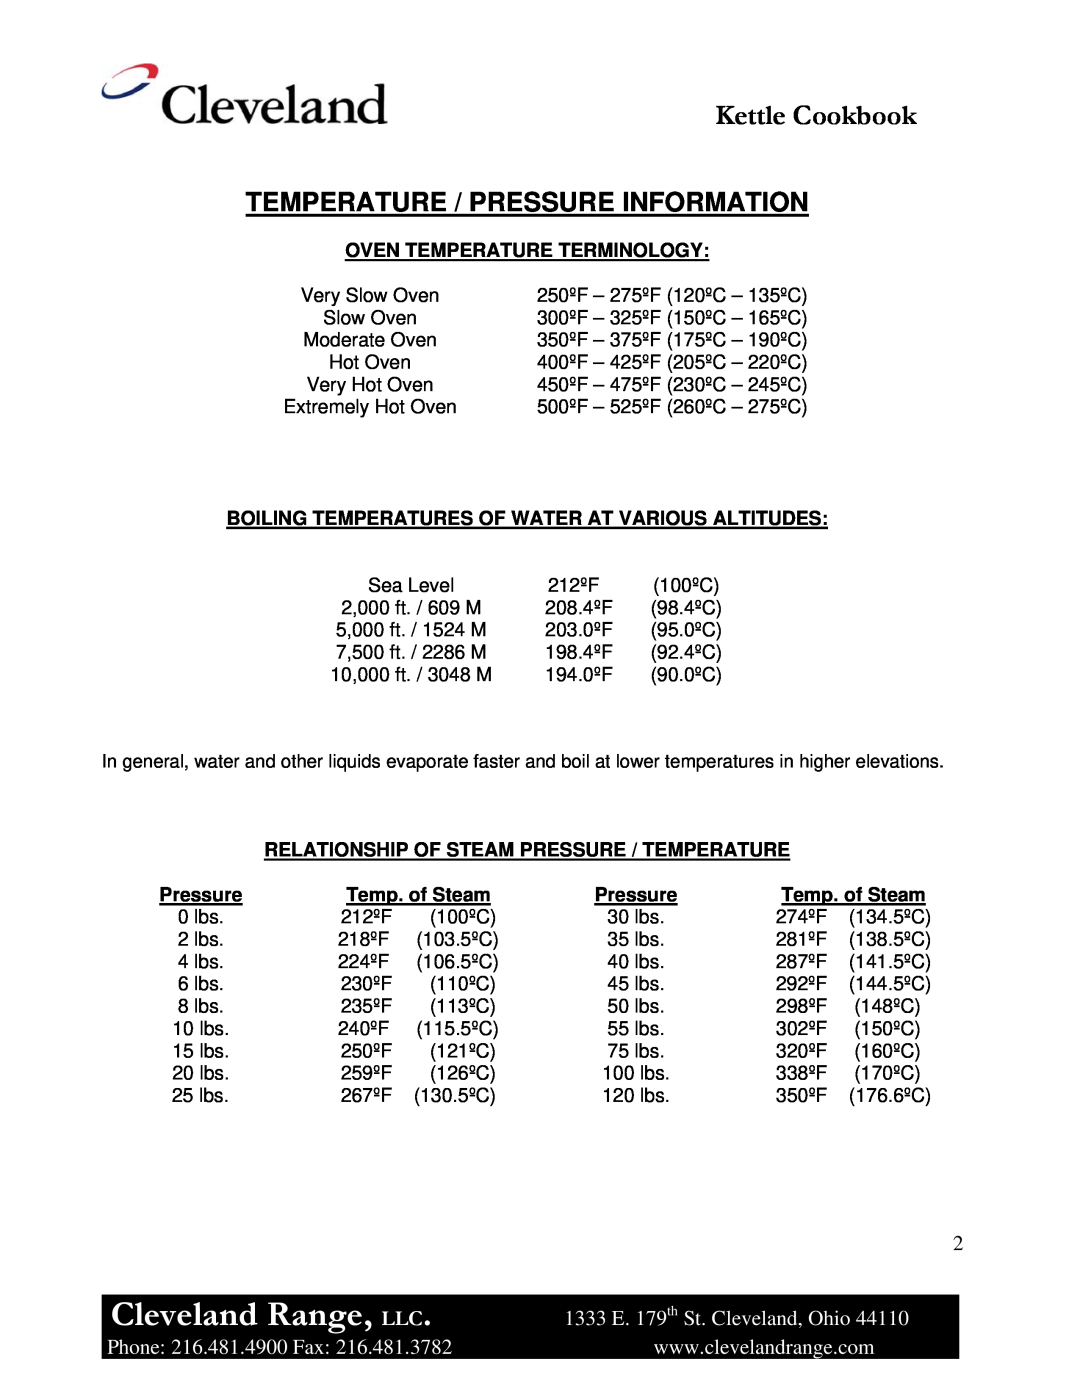 Cleveland Range Steam Jacketed Kettle manual Temperature / Pressure Information, Cleveland Range, LLC, Kettle Cookbook 